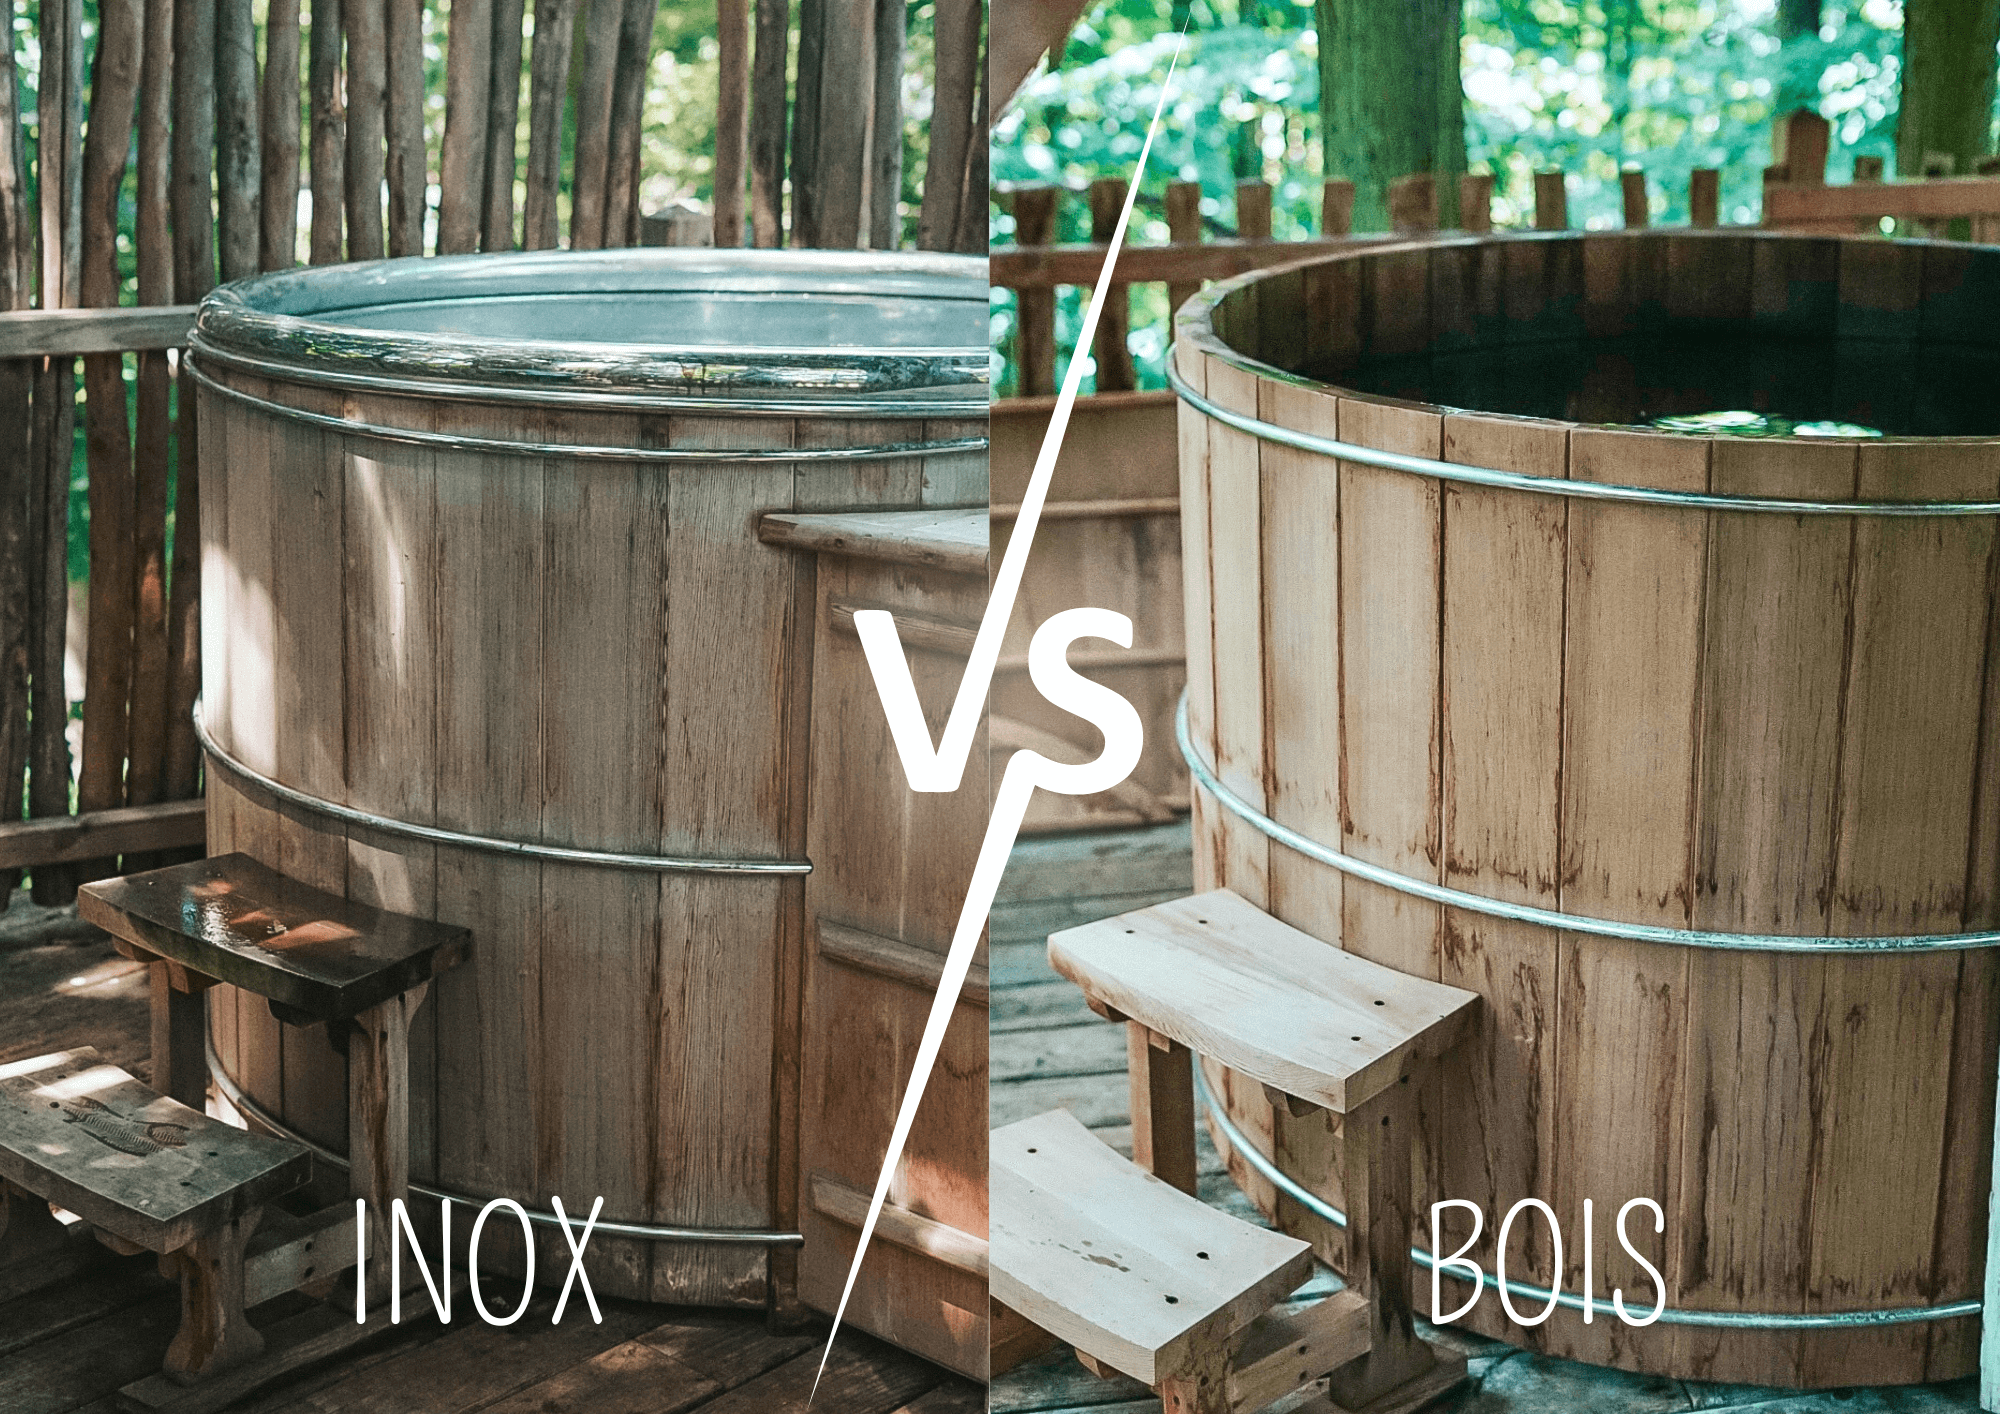 Comparaison des avantages du bois et de l’inox dans les bains nordiques